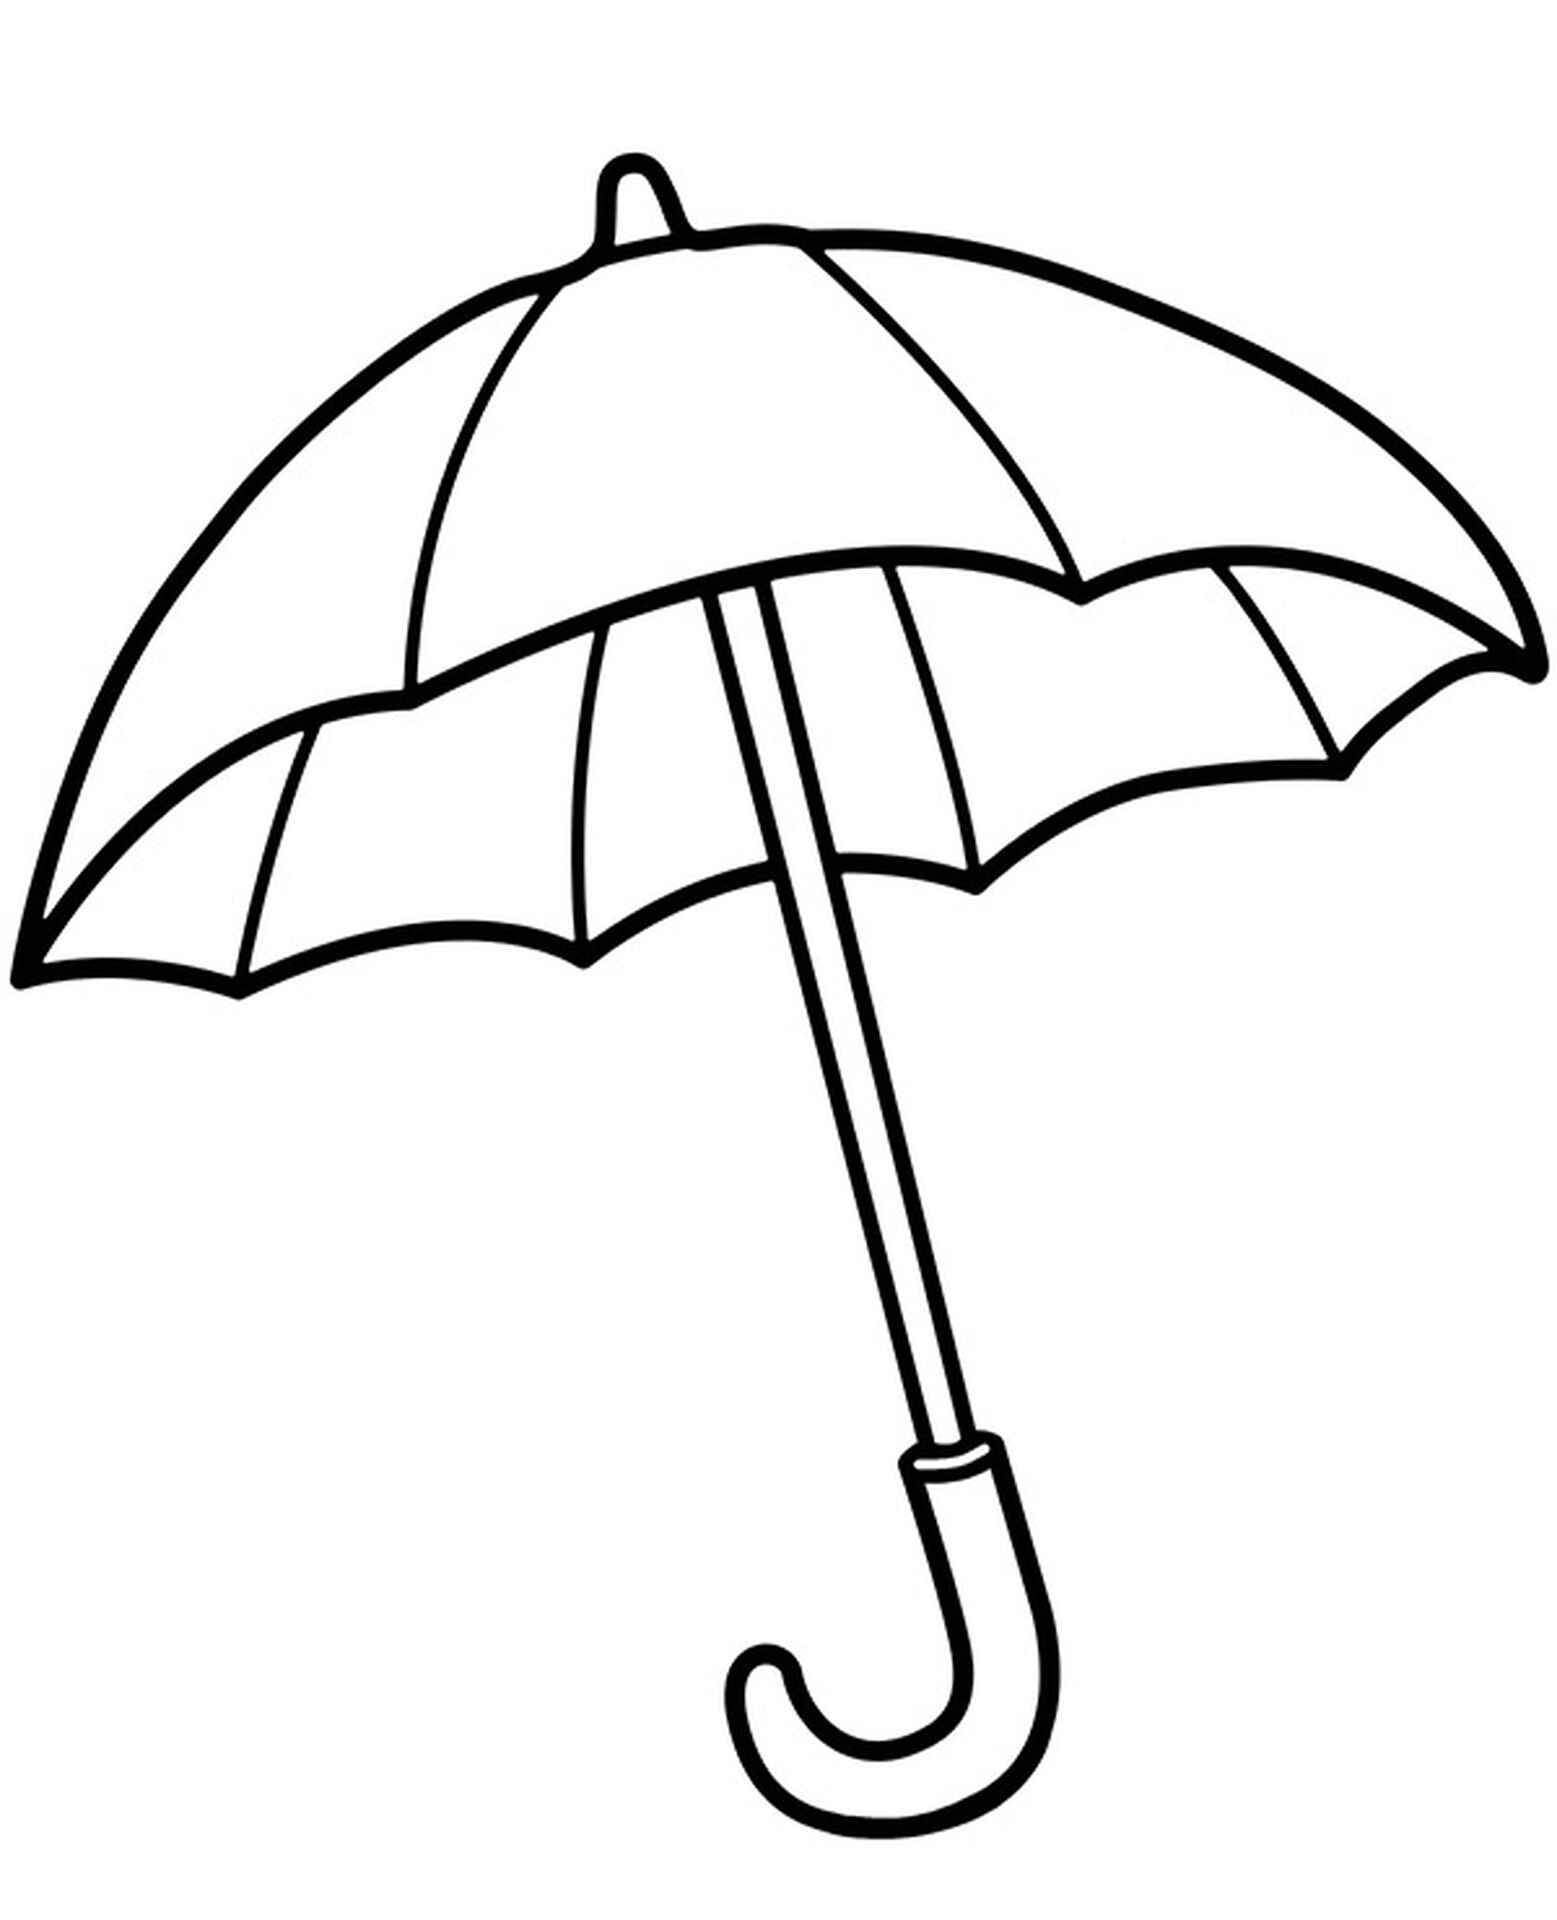 Зонтик карандашом. Зонтик раскраска для детей. Зонт раскраска для детей. Зонтик трафарет для детей. Зонт для раскрашивания детям.